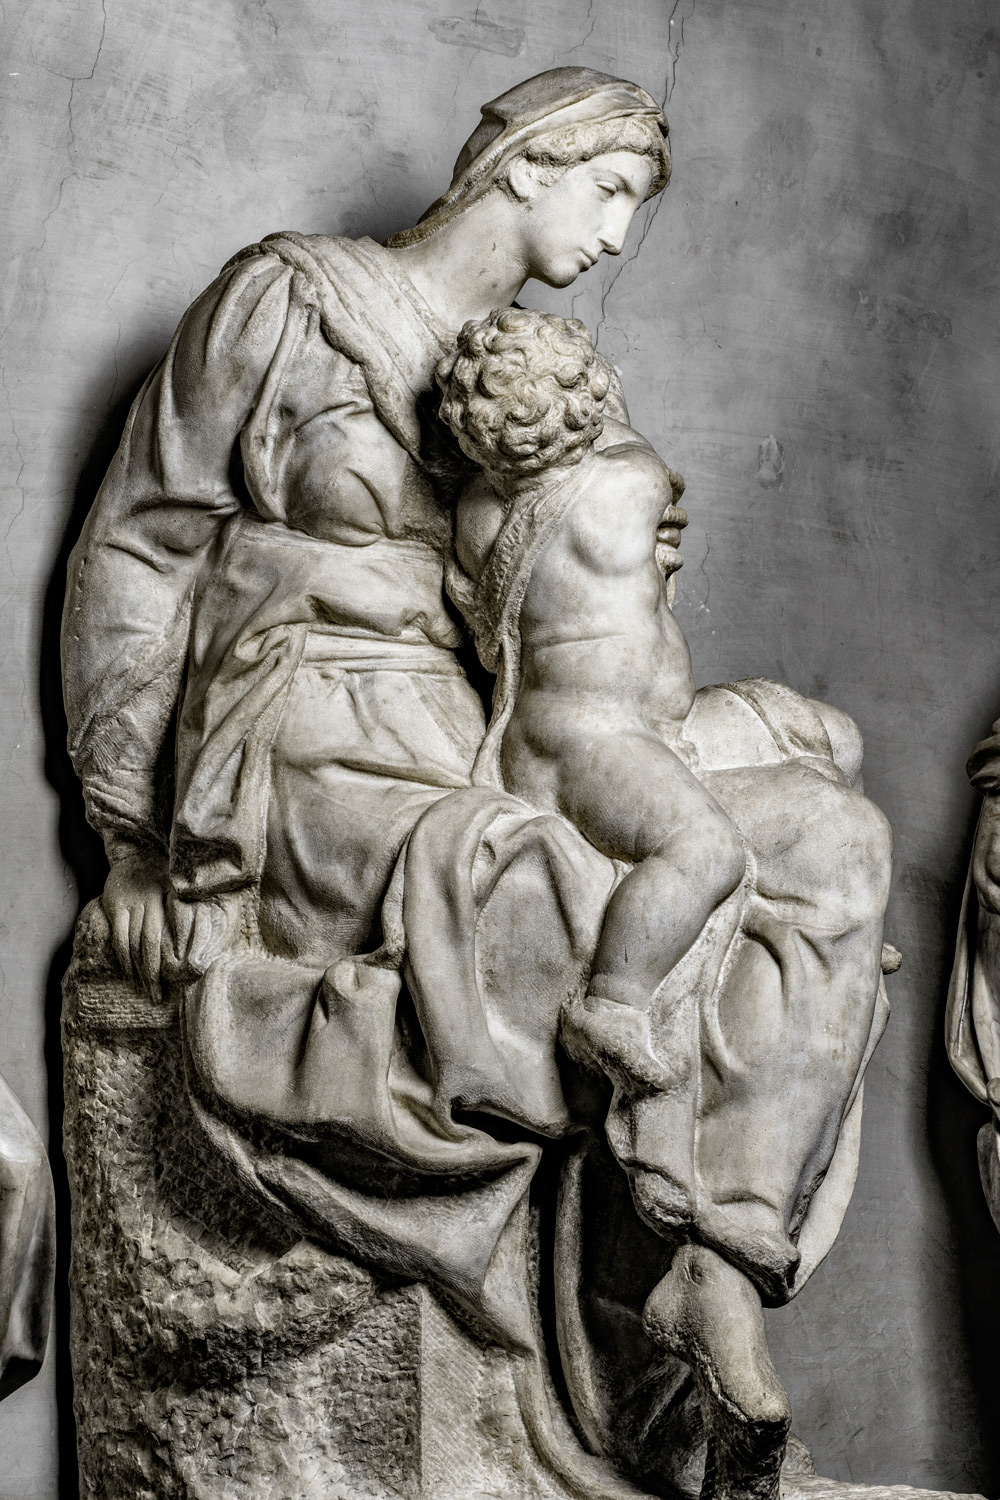 
La Madonna Medici di Michelangelo. Ph. Credit Andrea Jemolo